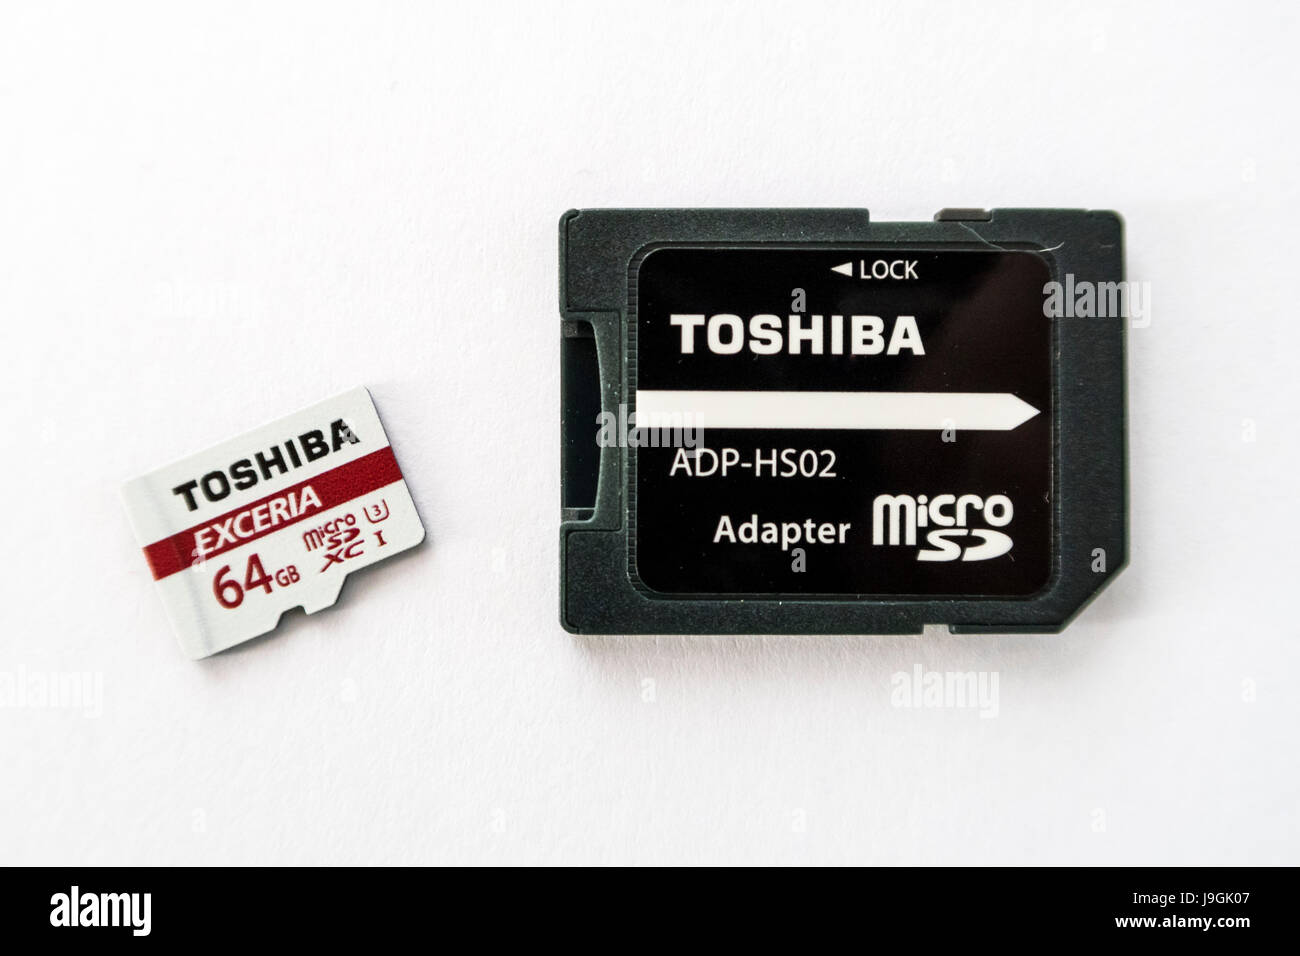 Toshiba Exceria XC microSD scheda di memoria con una capacità di 64GB e una scheda microSD per adattatore per scheda SD su sfondo bianco. Foto Stock